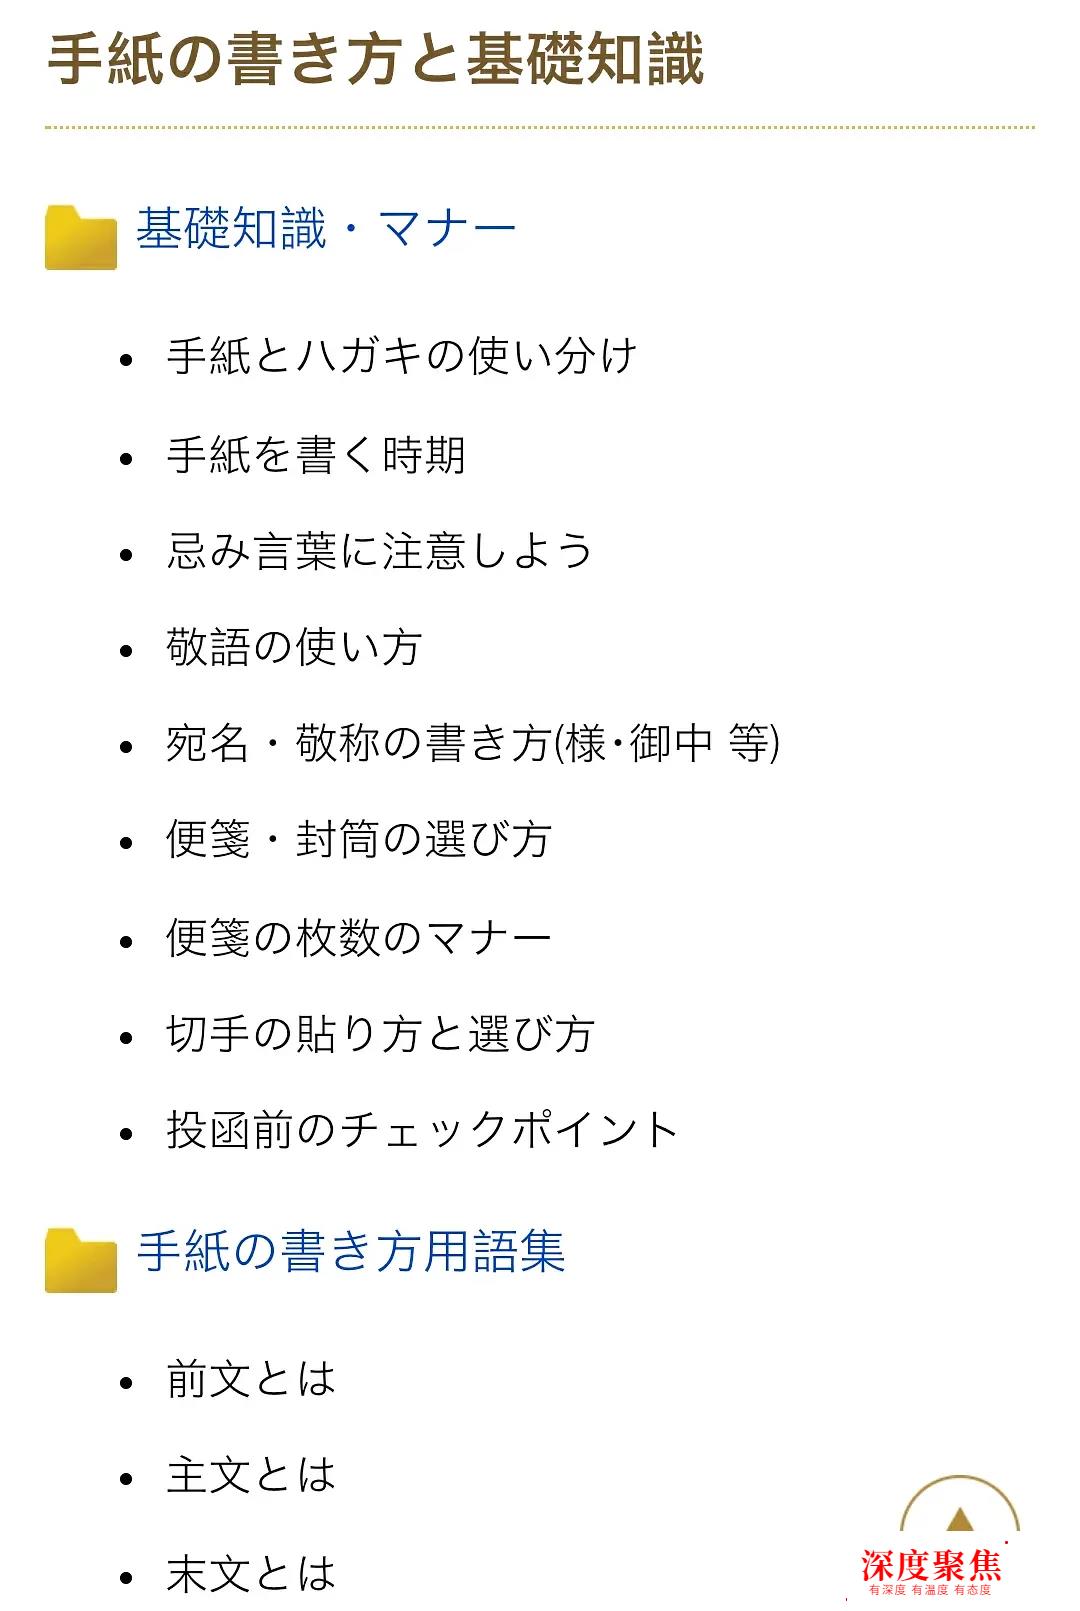 轻松学日语，你需要知道的10个网站